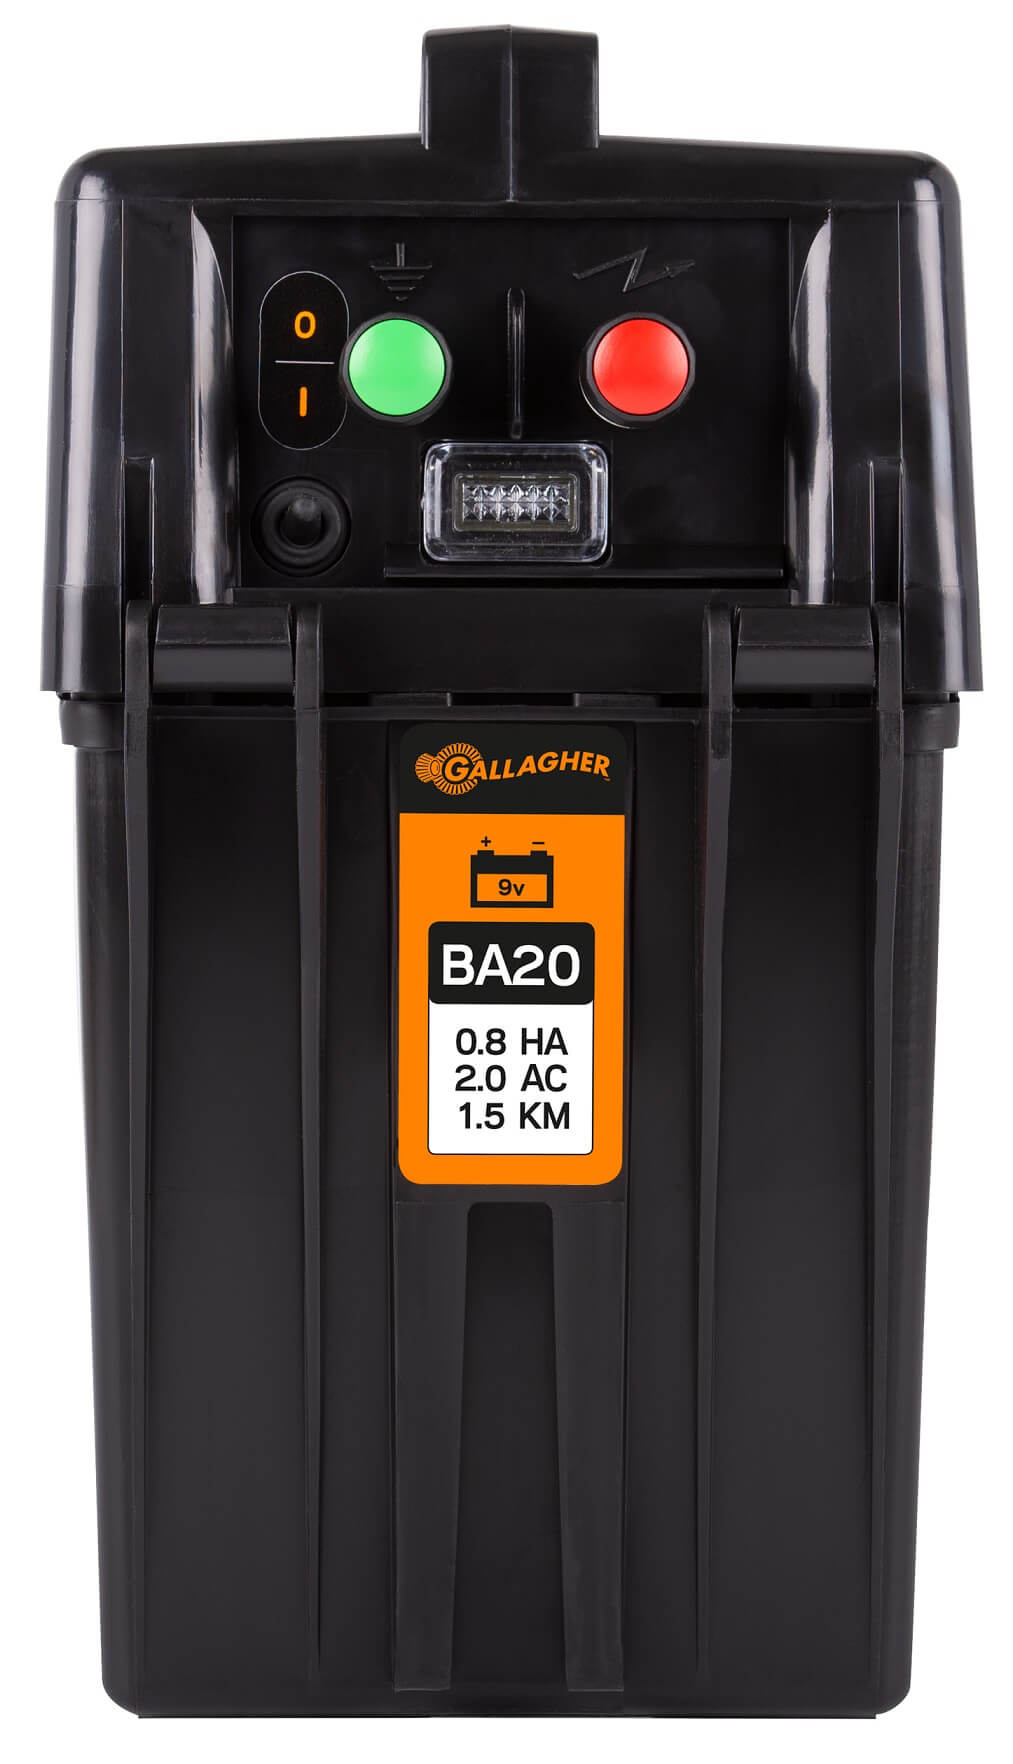 GALLAGHER Weidezaungerät BA20 Batteriegerät 9 V